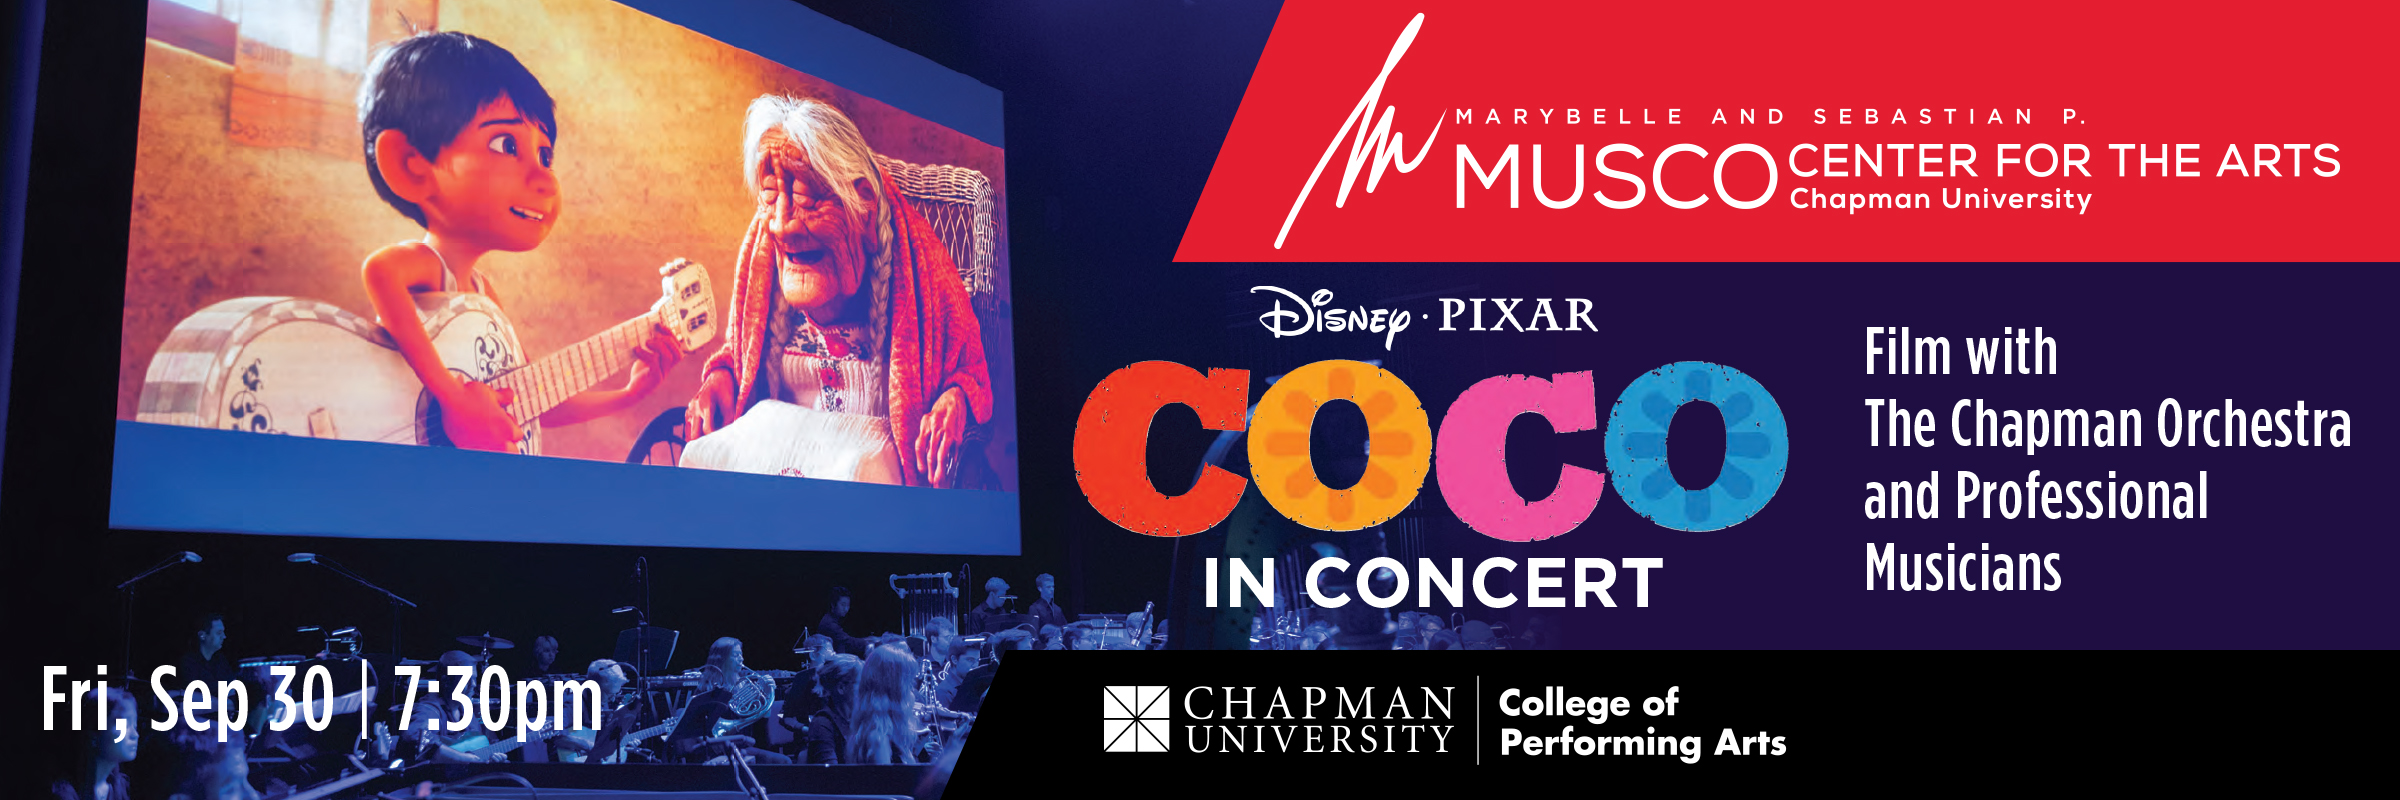 Disney Pixar Coco in Concert